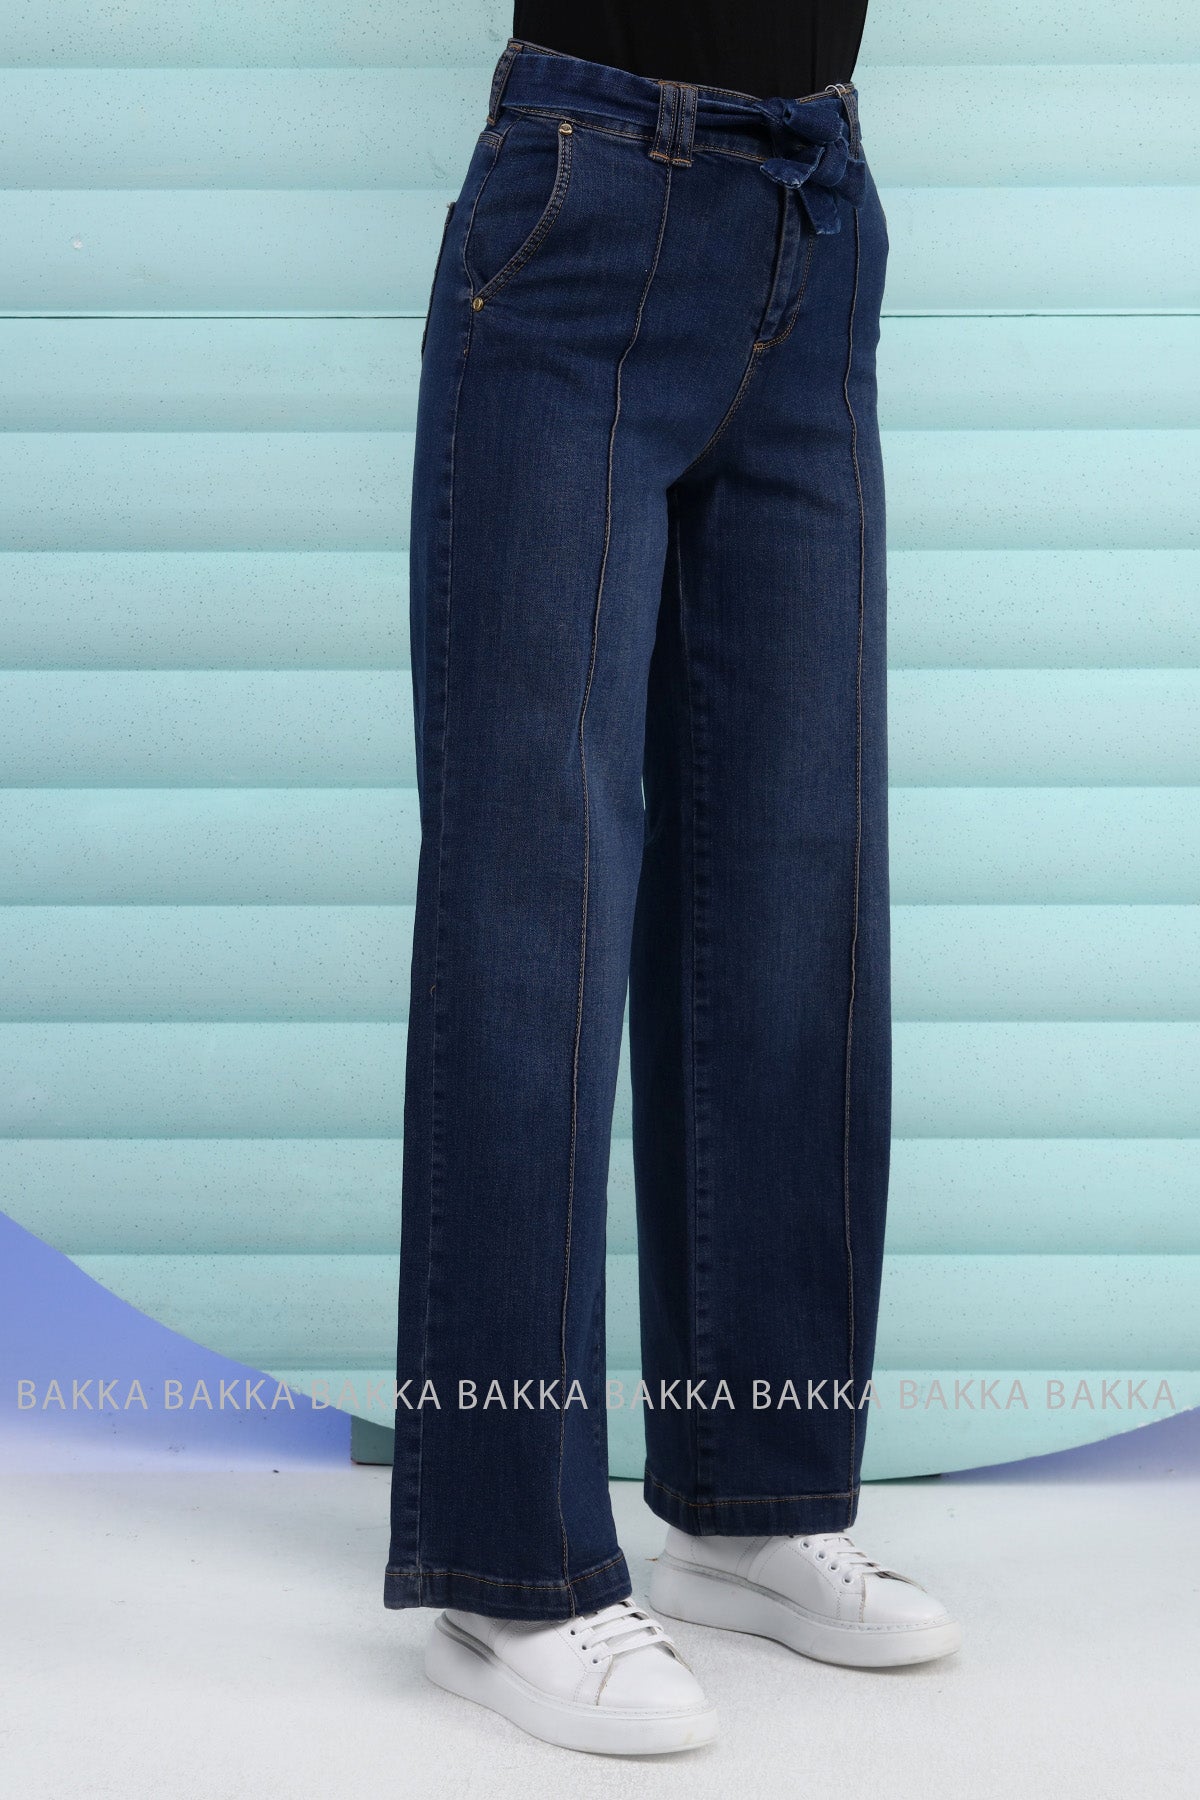 Jeans -9116- dark blue